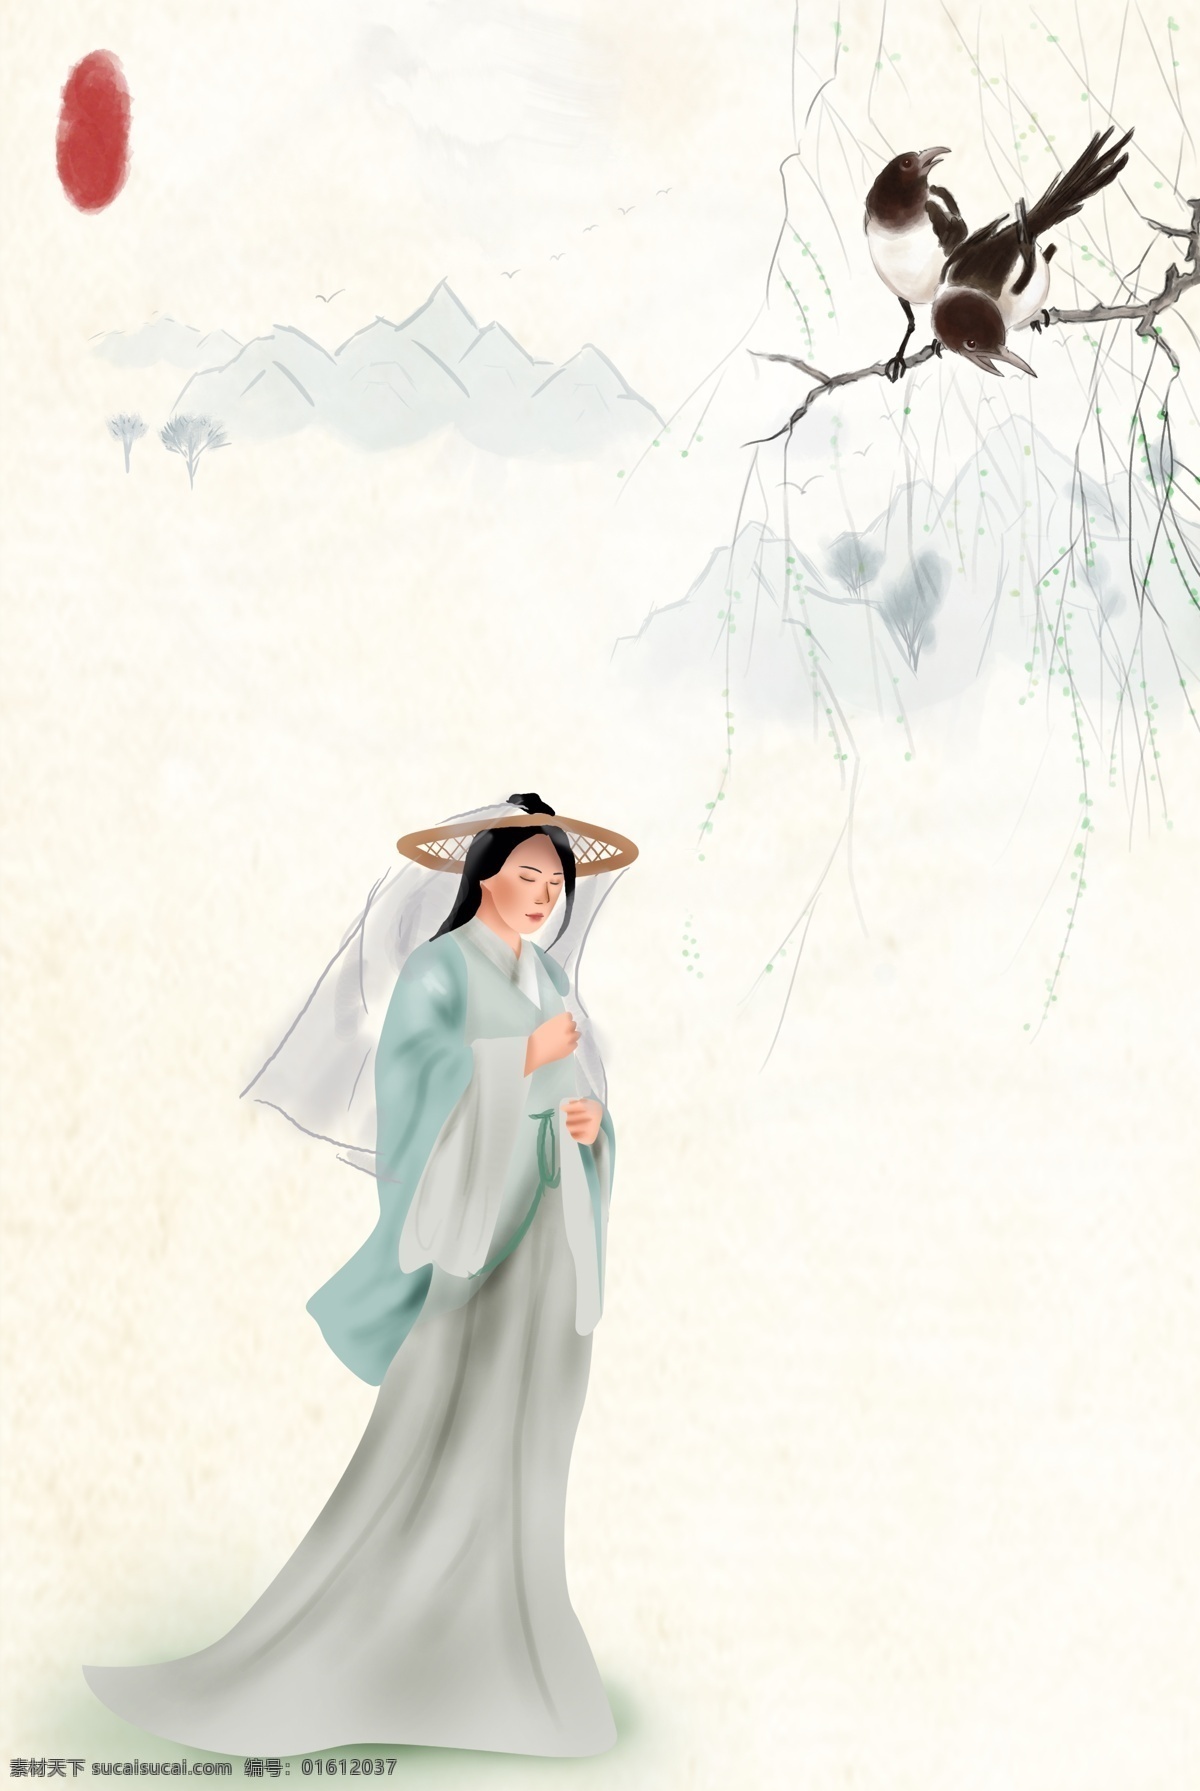 仕女图 工笔画 古典 中国风 植物 花鸟 鸟 简约 复古 花卉 荷叶